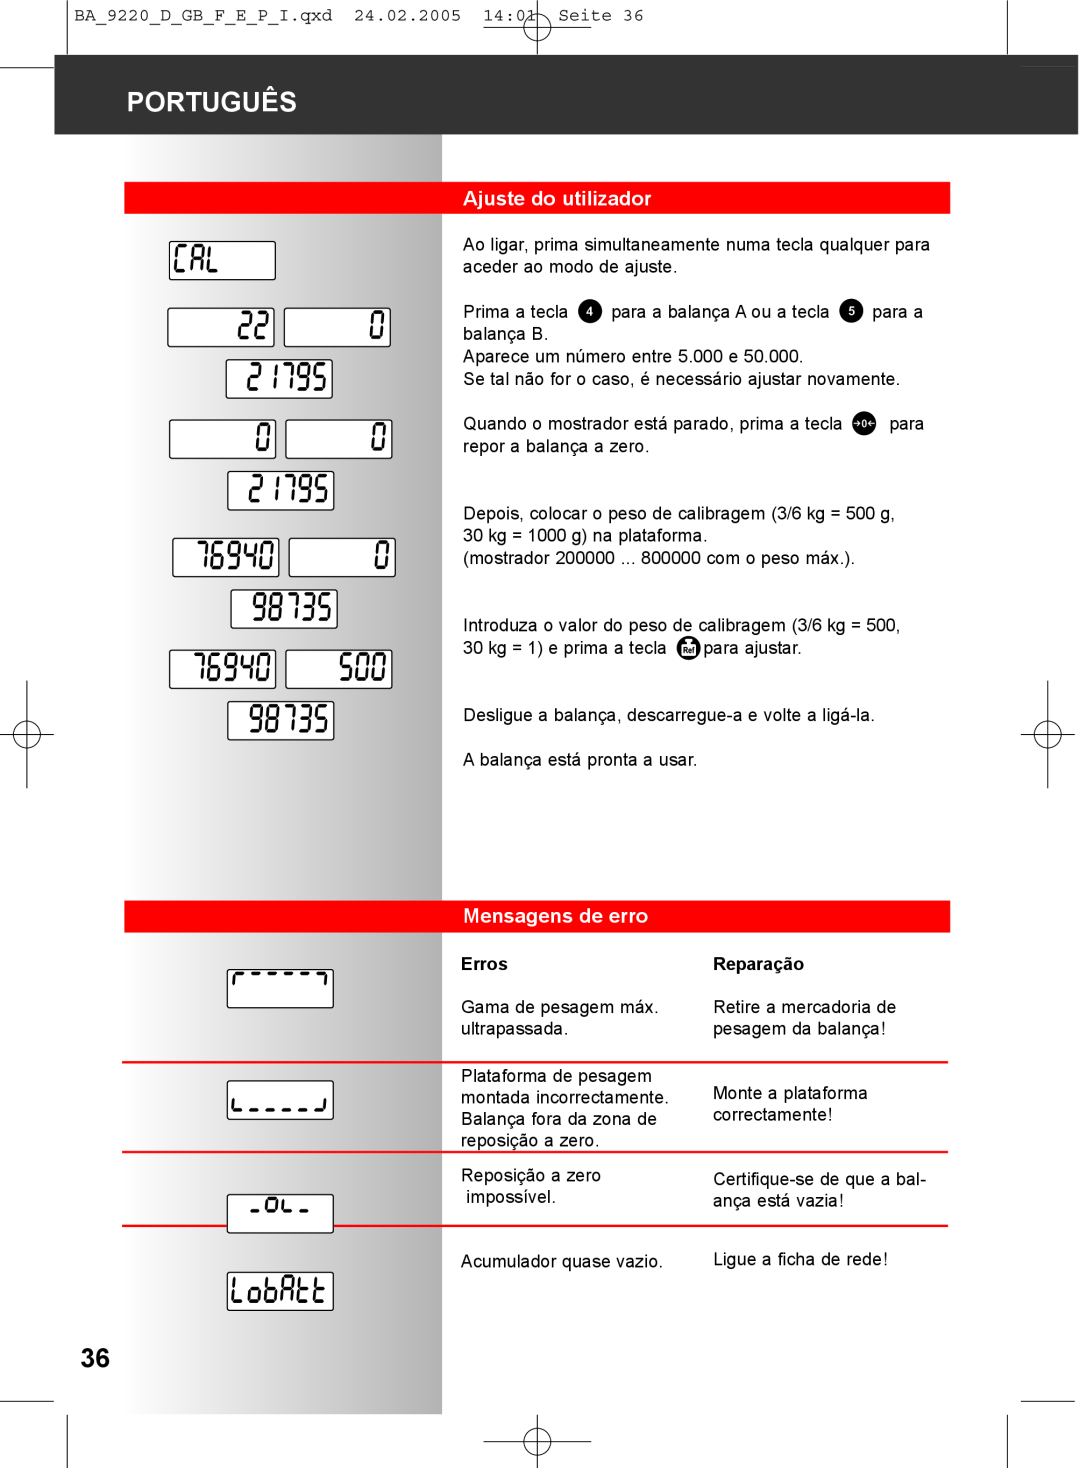 Soehnle 9220 manual Ajuste do utilizador, Mensagens de erro, Português, Erros, Reparação 